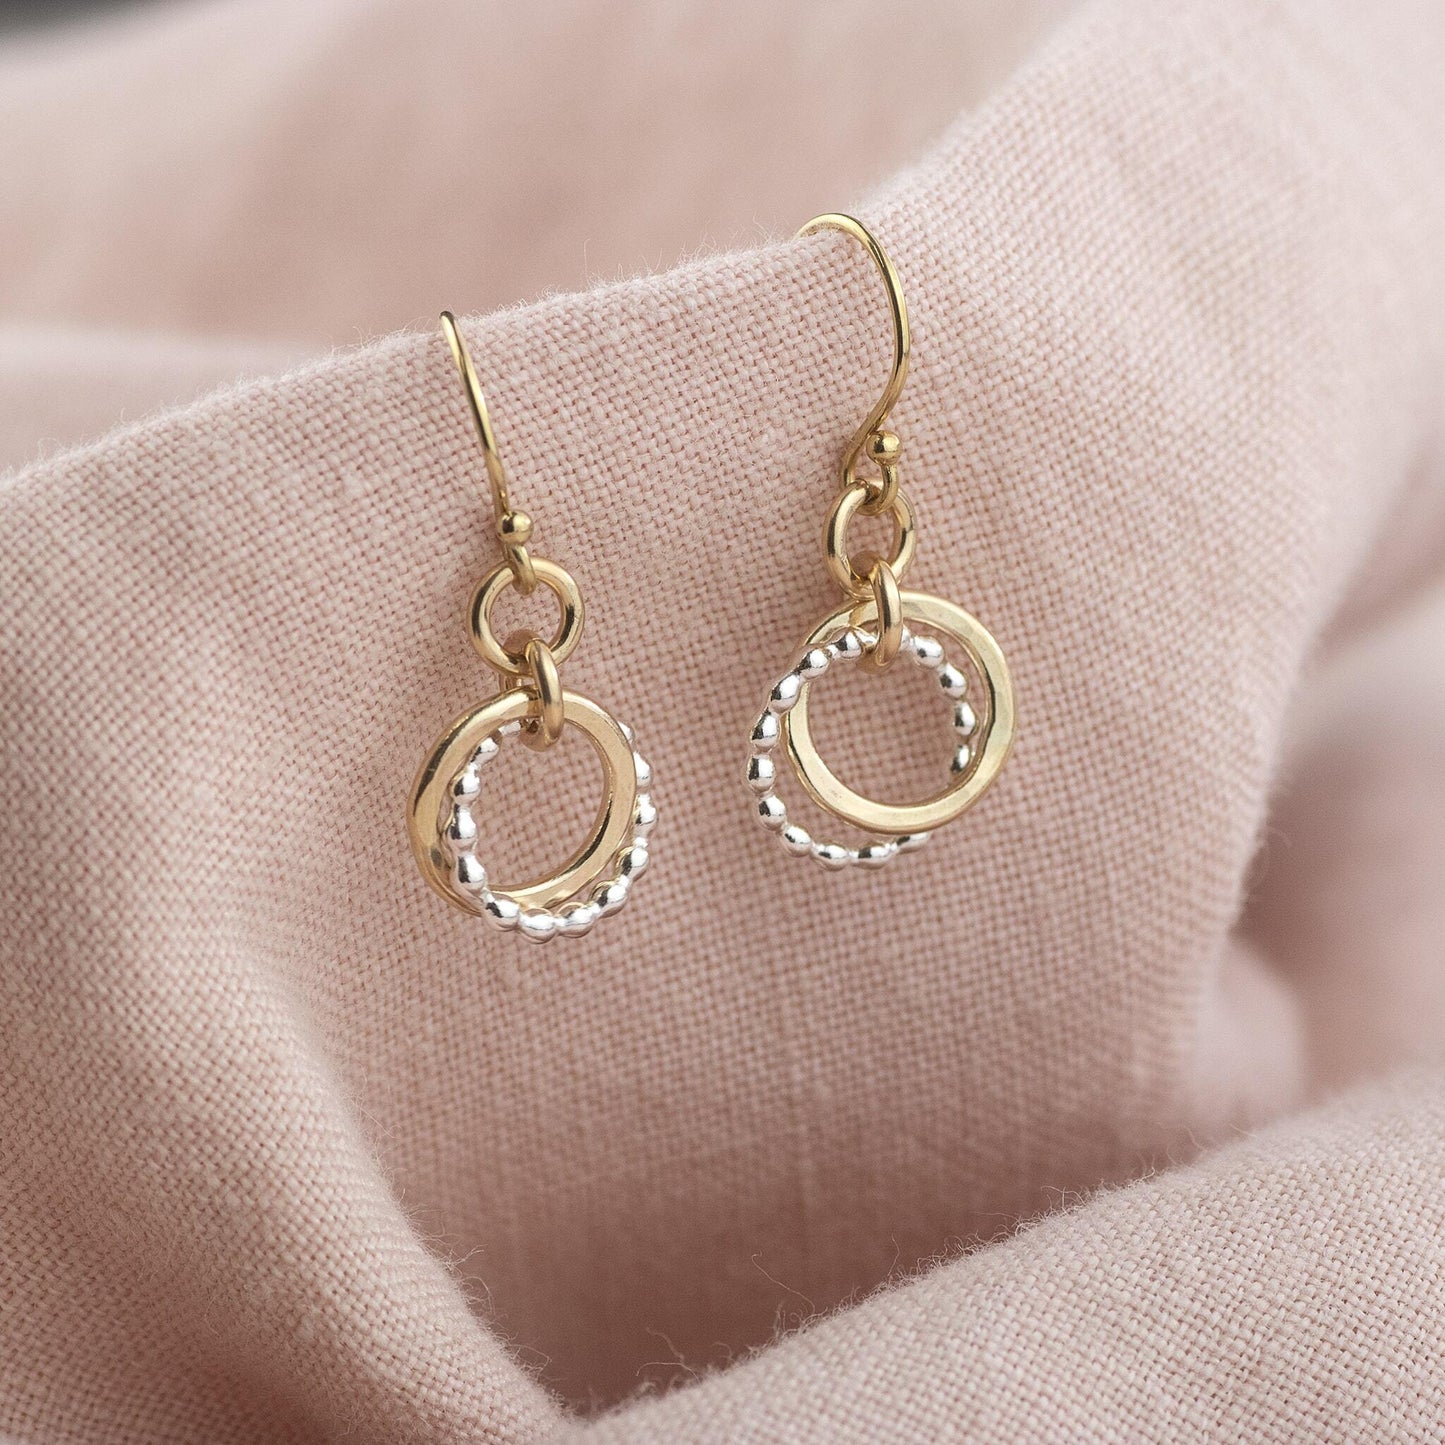 Gift for Sister - 2 Links for 2 Sisters - Love Knot Earrings